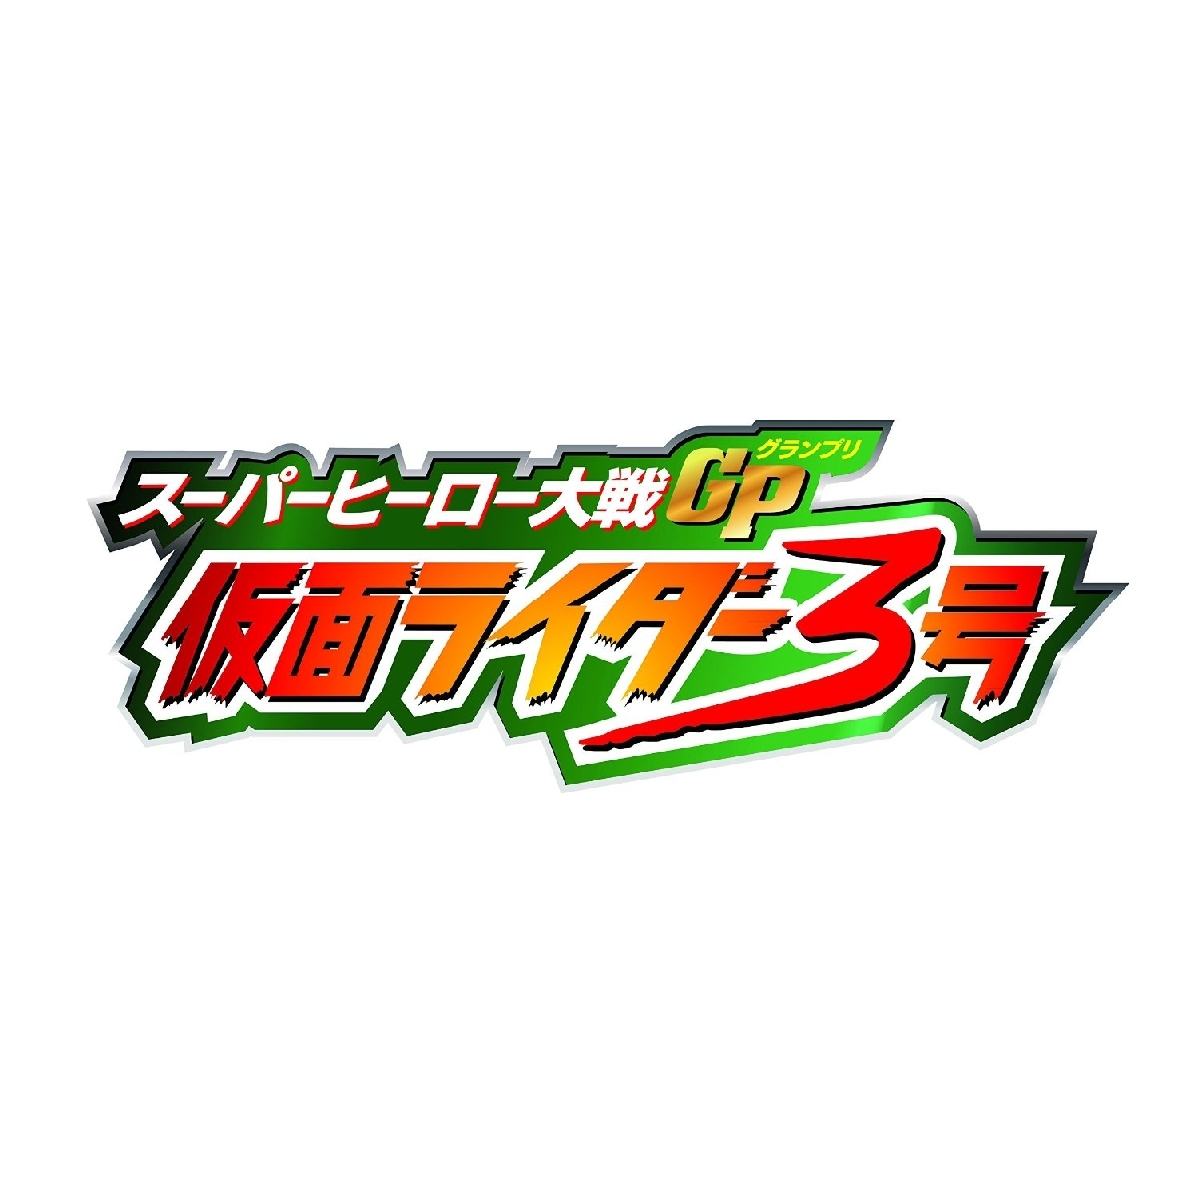 楽天ブックス: スーパーヒーロー大戦GP 仮面ライダー3号 コレクターズ 